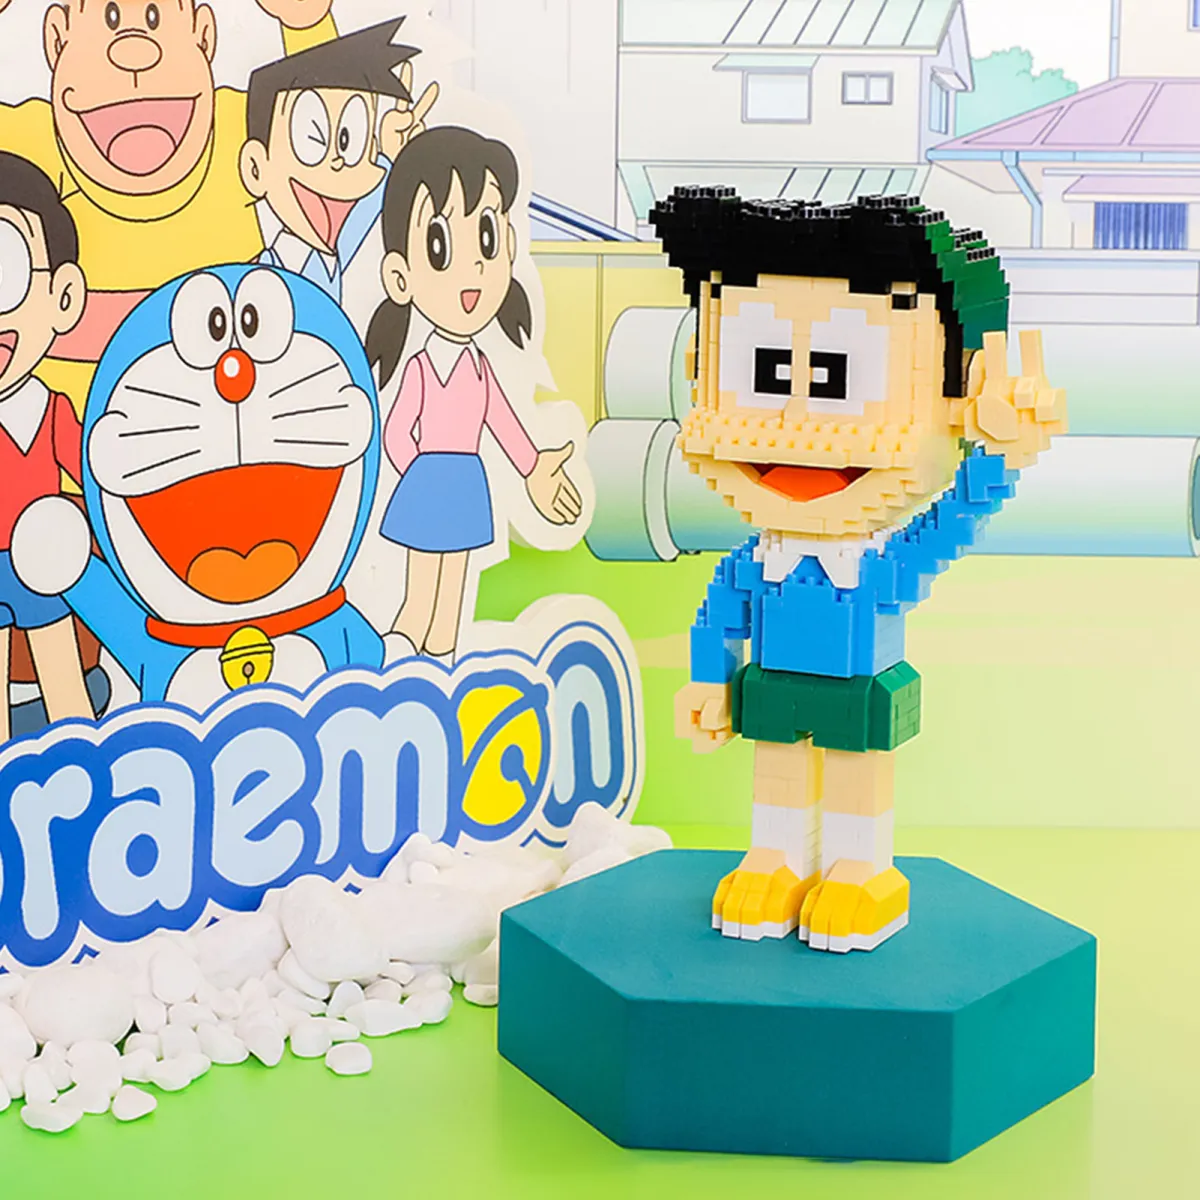 ASTELLA Doraemon Nobita Shizuka Khối Xếp Hình Nhân Vật Hổ Mập: Bạn yêu thích bộ phim hoạt hình Doraemon và muốn xây dựng các nhân vật trong phim một cách dễ dàng? Hãy tận hưởng niềm vui xây dựng các nhân vật của Doraemon, Nobita, Shizuka và Khối Xếp Hình Nhân Vật Hổ Mập với bộ sản phẩm ASTELLA. Hãy cùng tận hưởng những giây phút tuyệt vời khi lắp ráp các nhân vật trong bộ phim yêu thích của bạn.